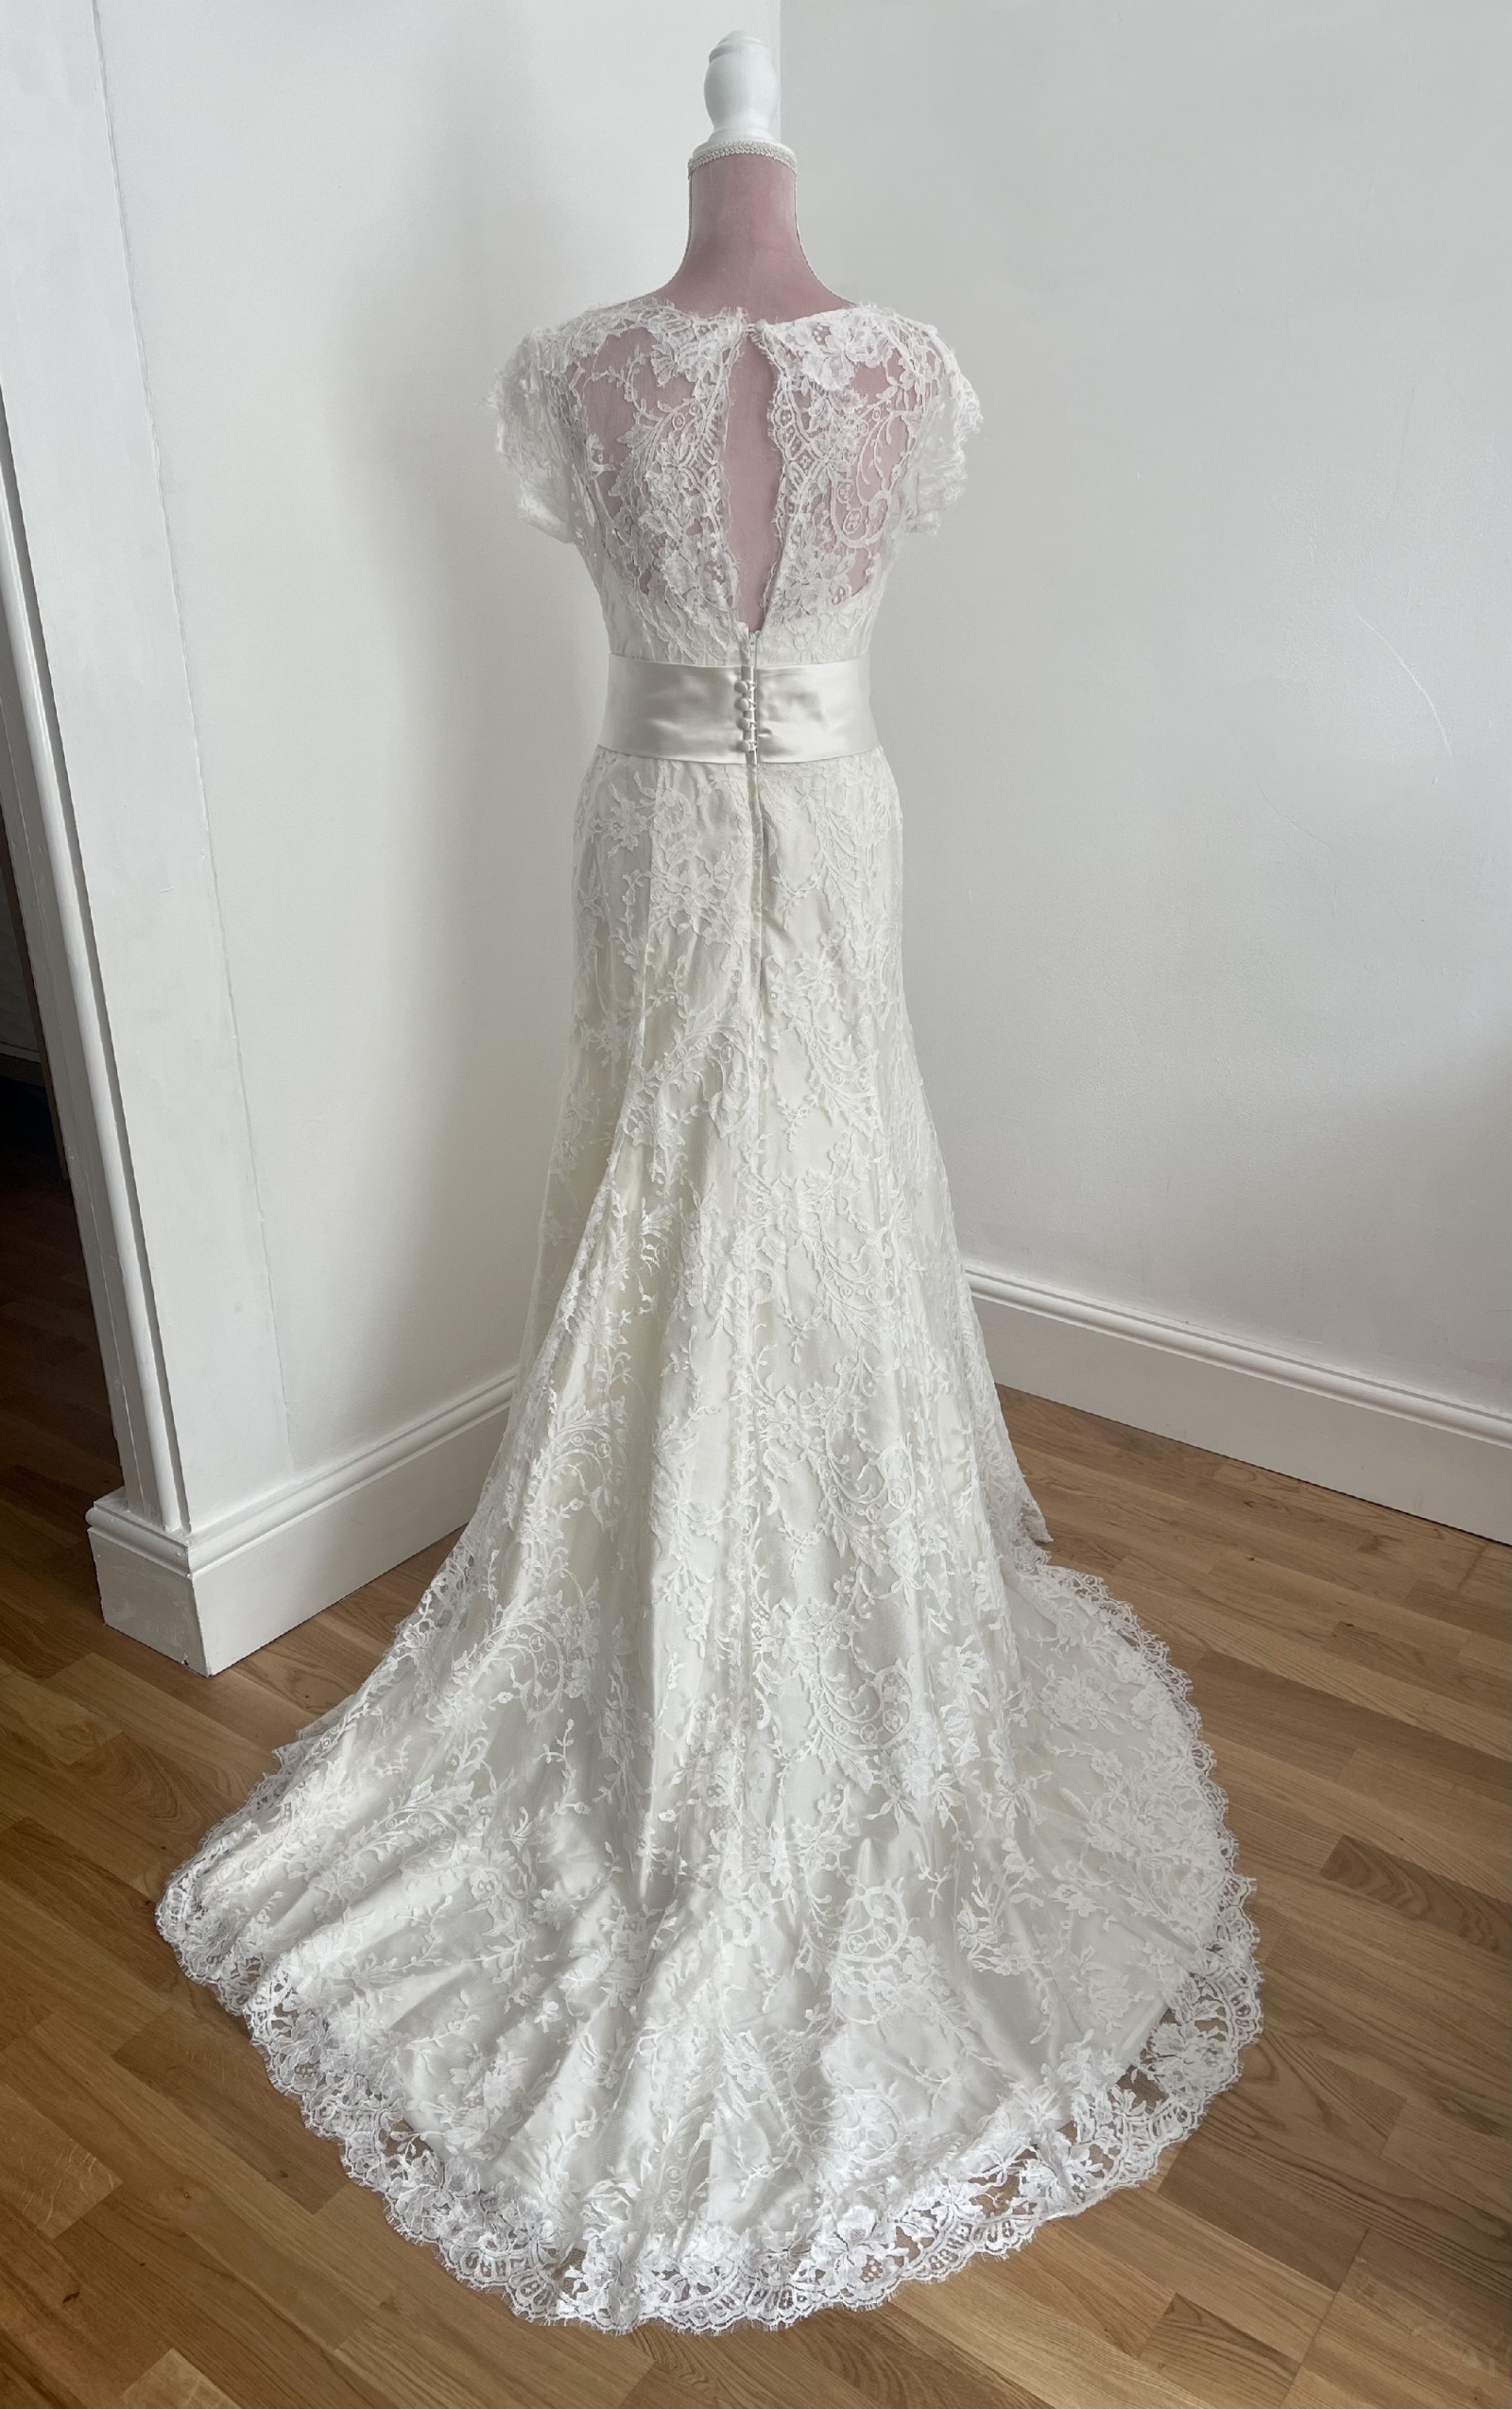 Nicola Anne Wedding Dress Save 75% - Stillwhite